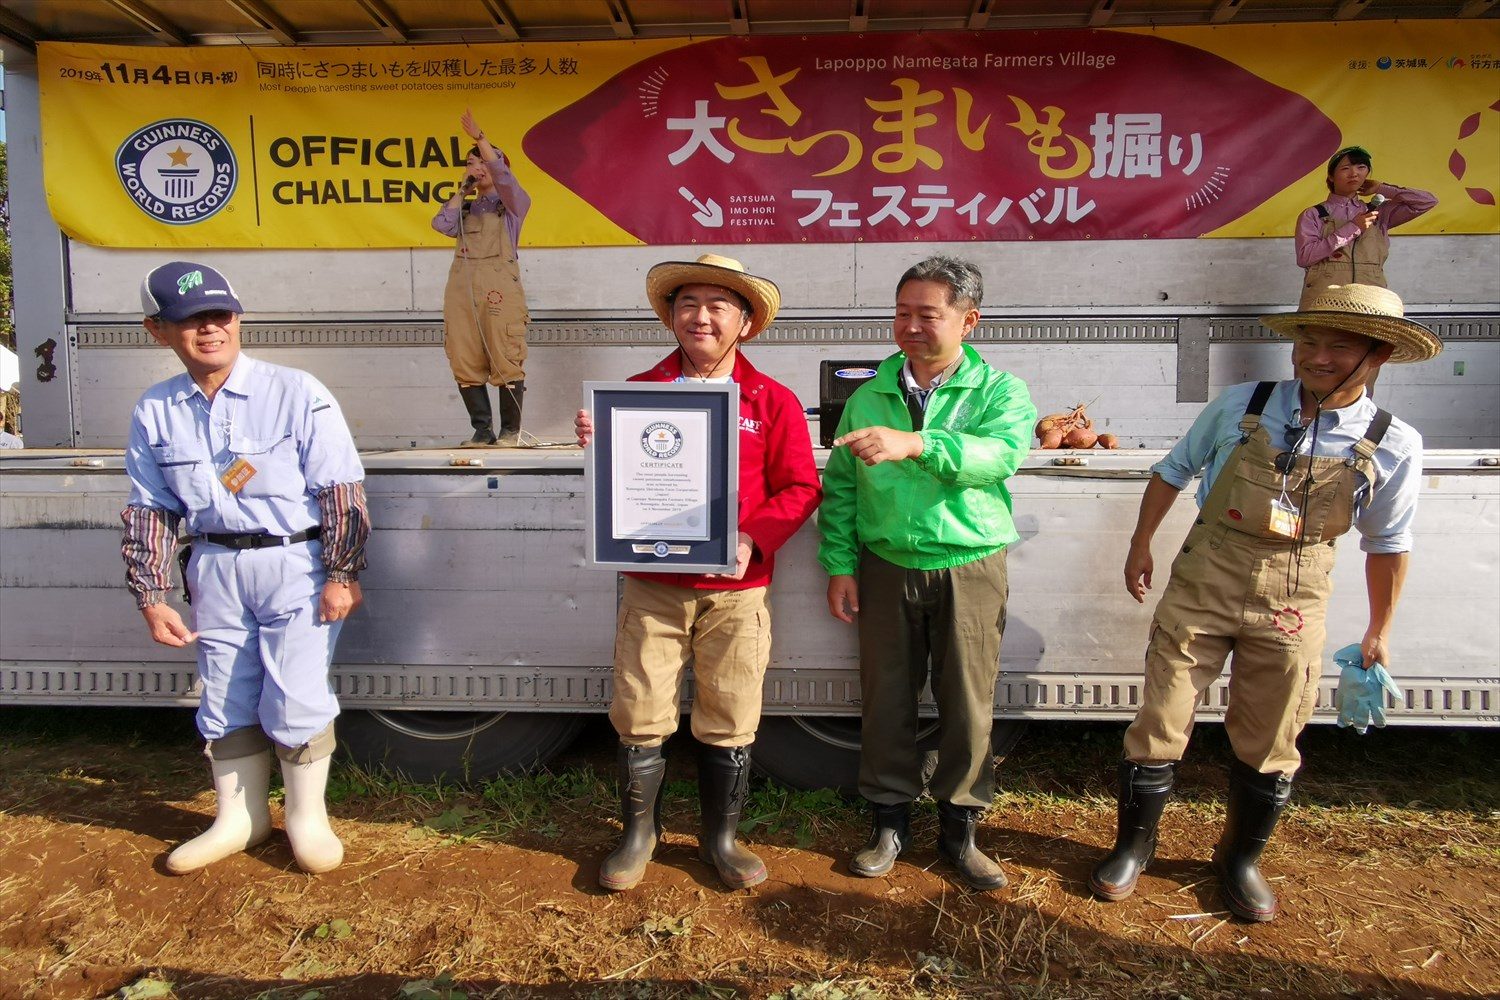 茨城県で 同時にサツマイモを収穫した最多人数 ギネス記録更新 1223人が参加 Sirabee